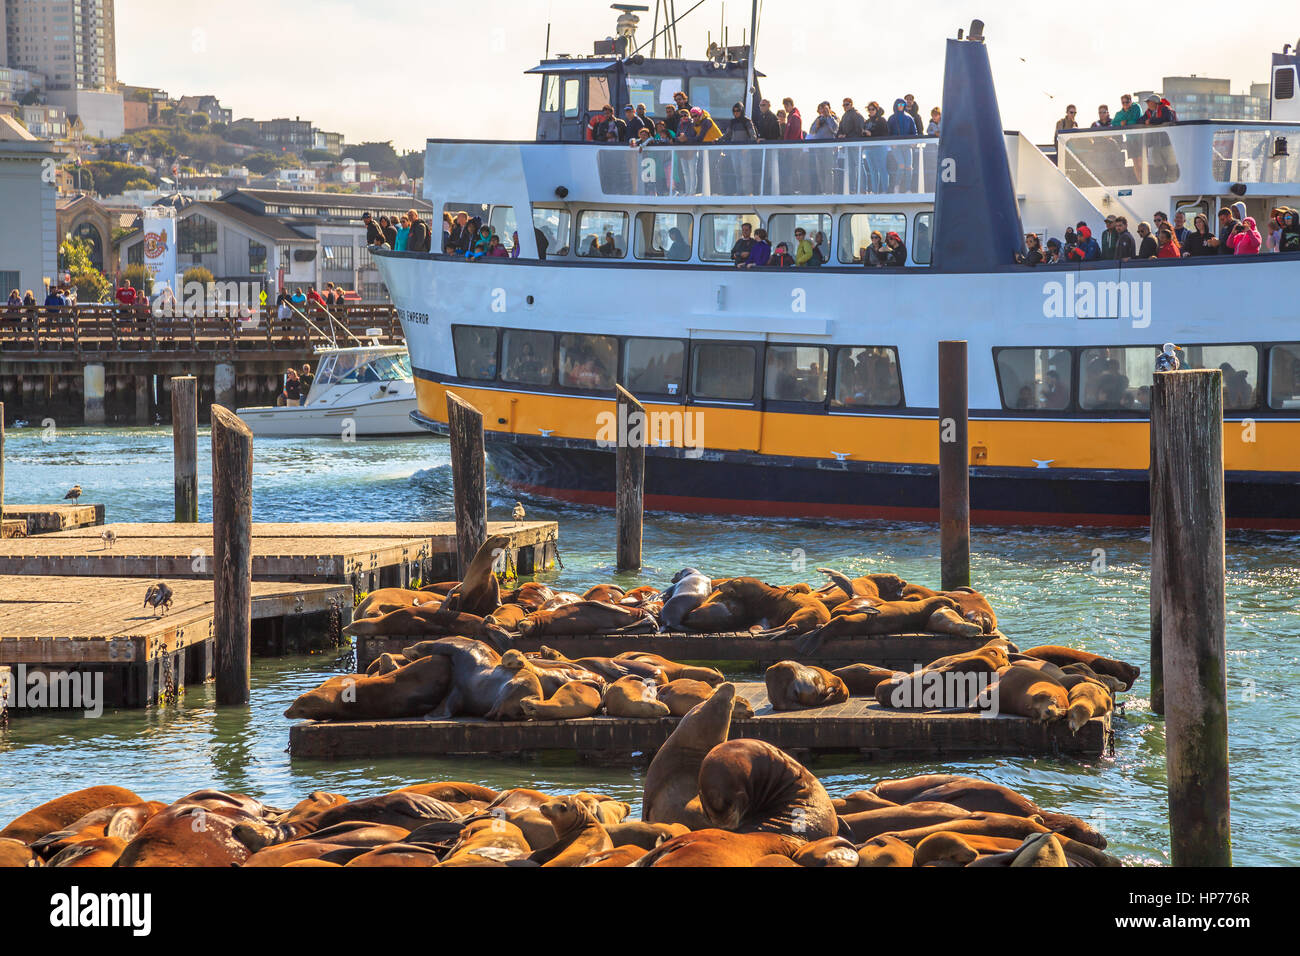 San Francisco, California, Vereinigte Staaten von Amerika - 14. August 2016: Touristenboot am Pier 39. Touristen, die Seelöwen-Kolonie, eine beliebte touristische Attraktion o Stockfoto